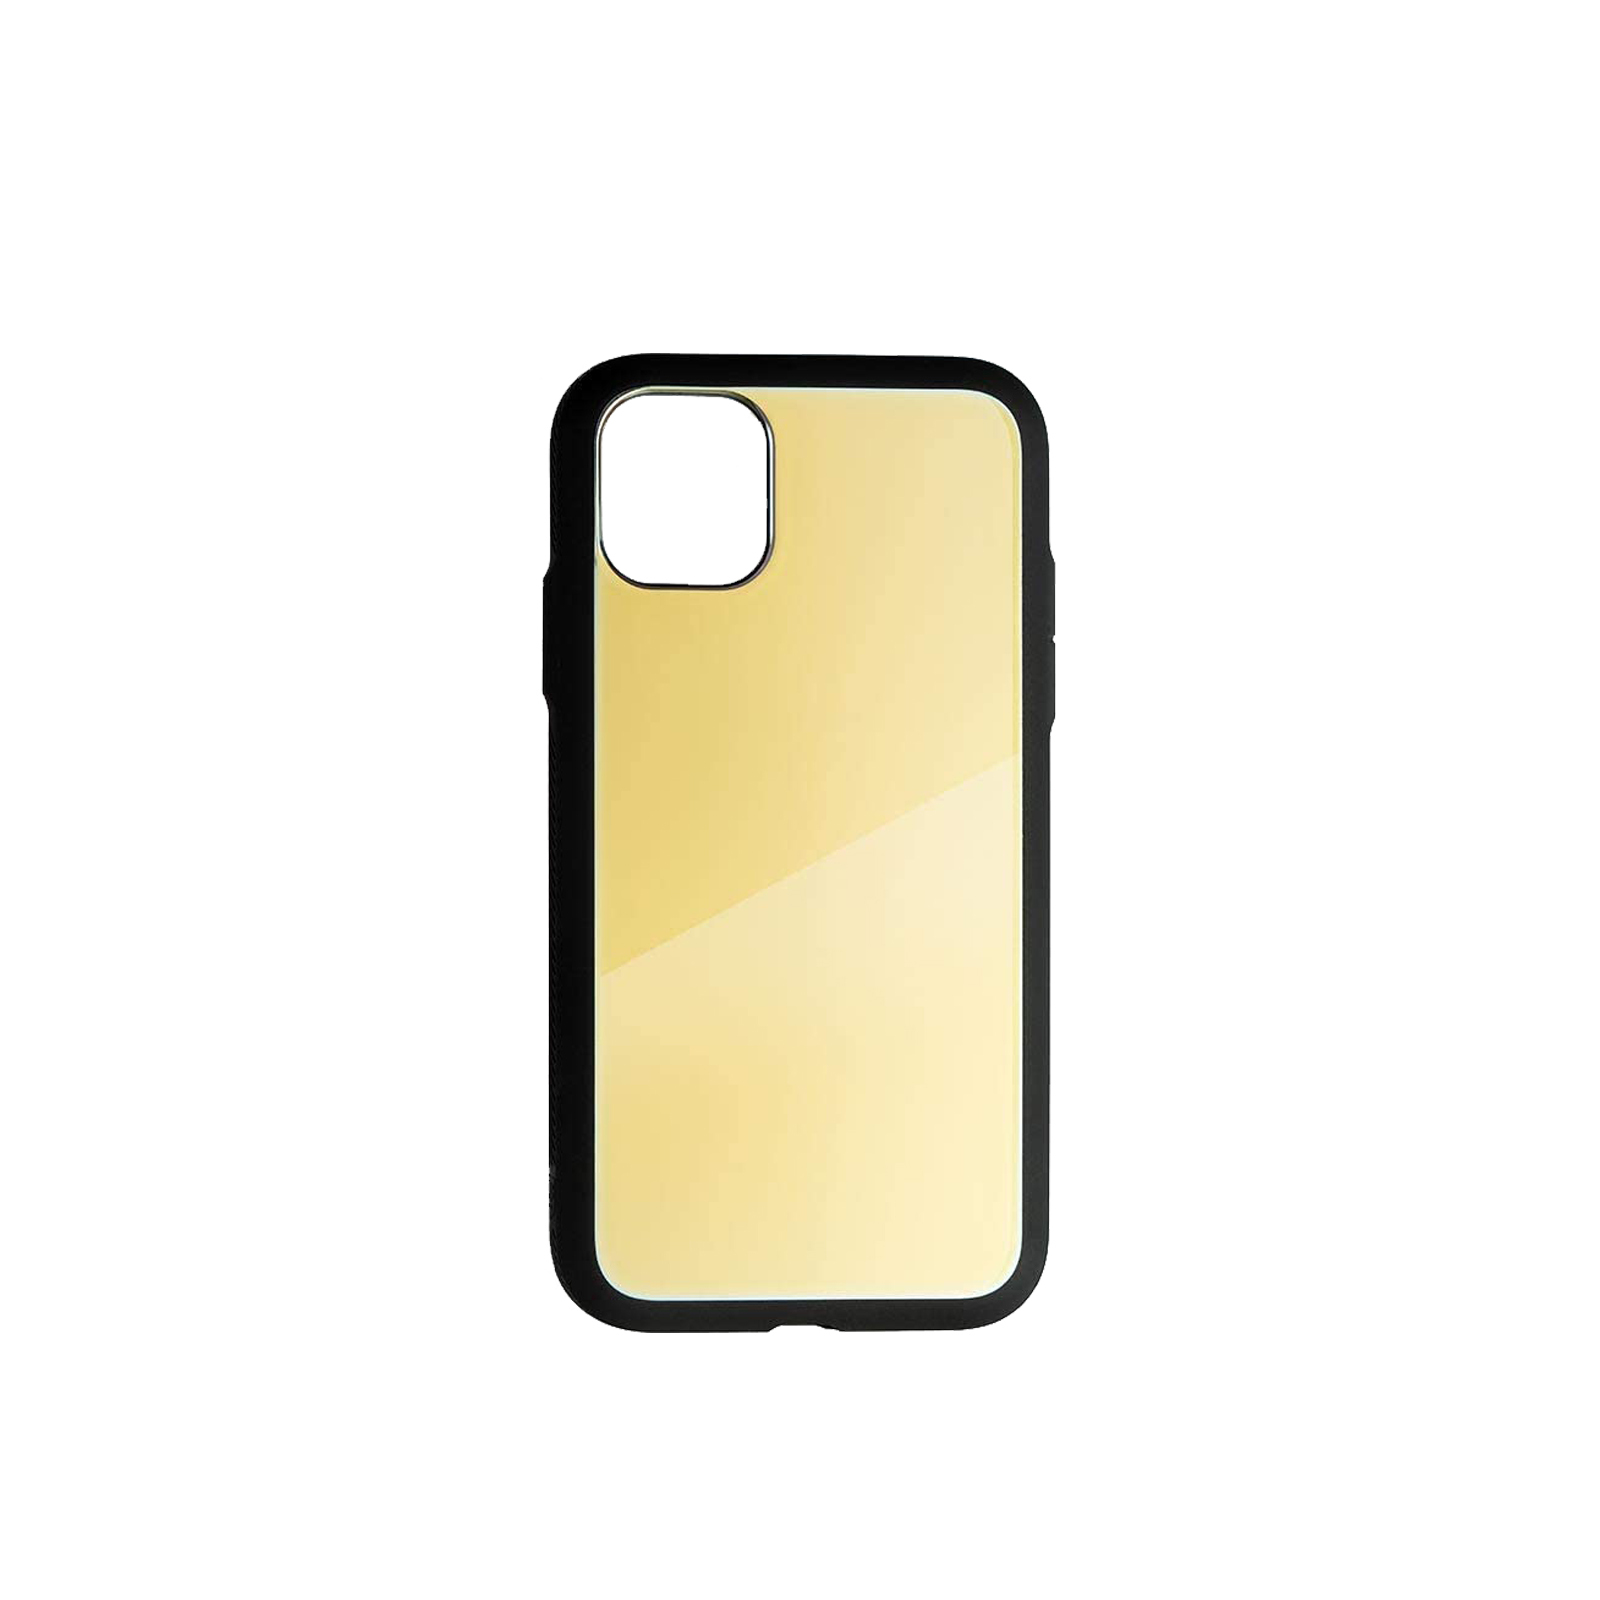 Paradigm S iPhone 11 Pro Case [Black / Gold]